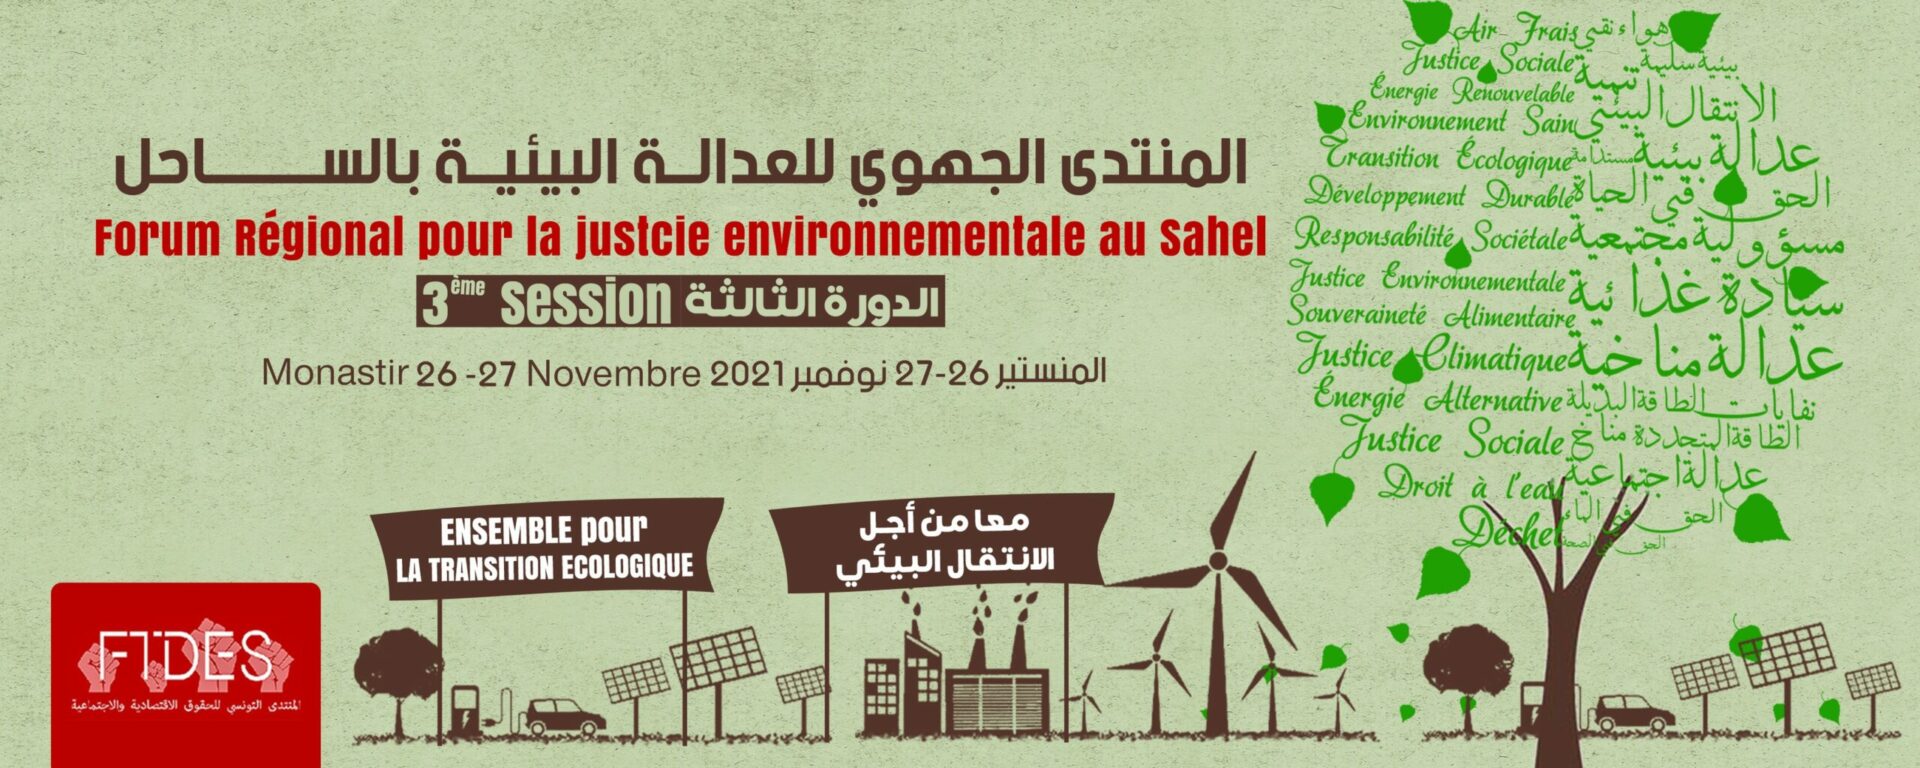 (العربية) المنتدى الجهوي للعدالة البيئية بالساحل في دورته الثالثة